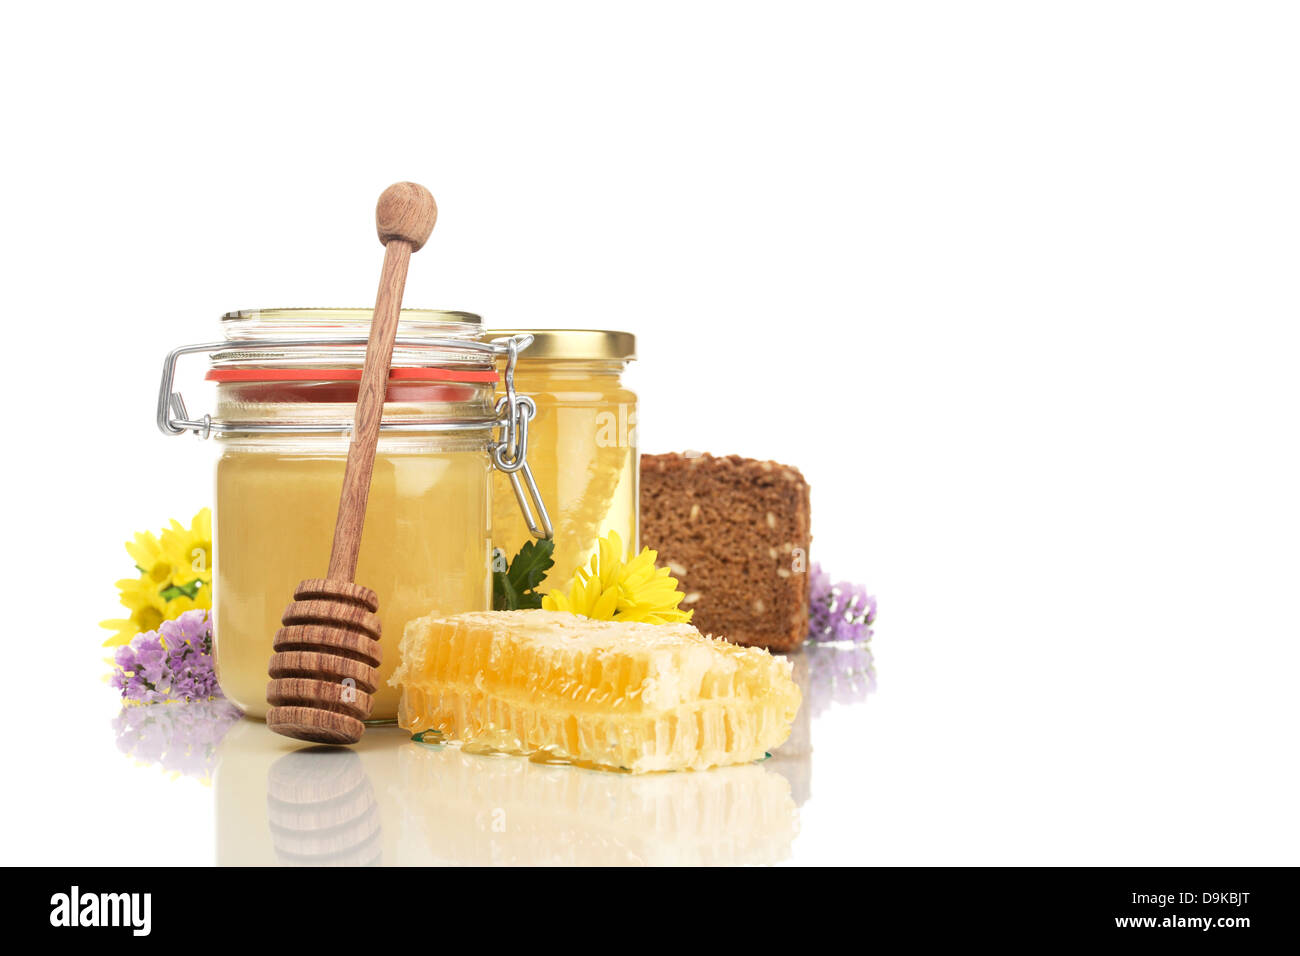 Lunettes avec miel miel, pain complet, miel et une cuillère de miel de fleurs, pots de miel, pain complet, miel et fl Banque D'Images